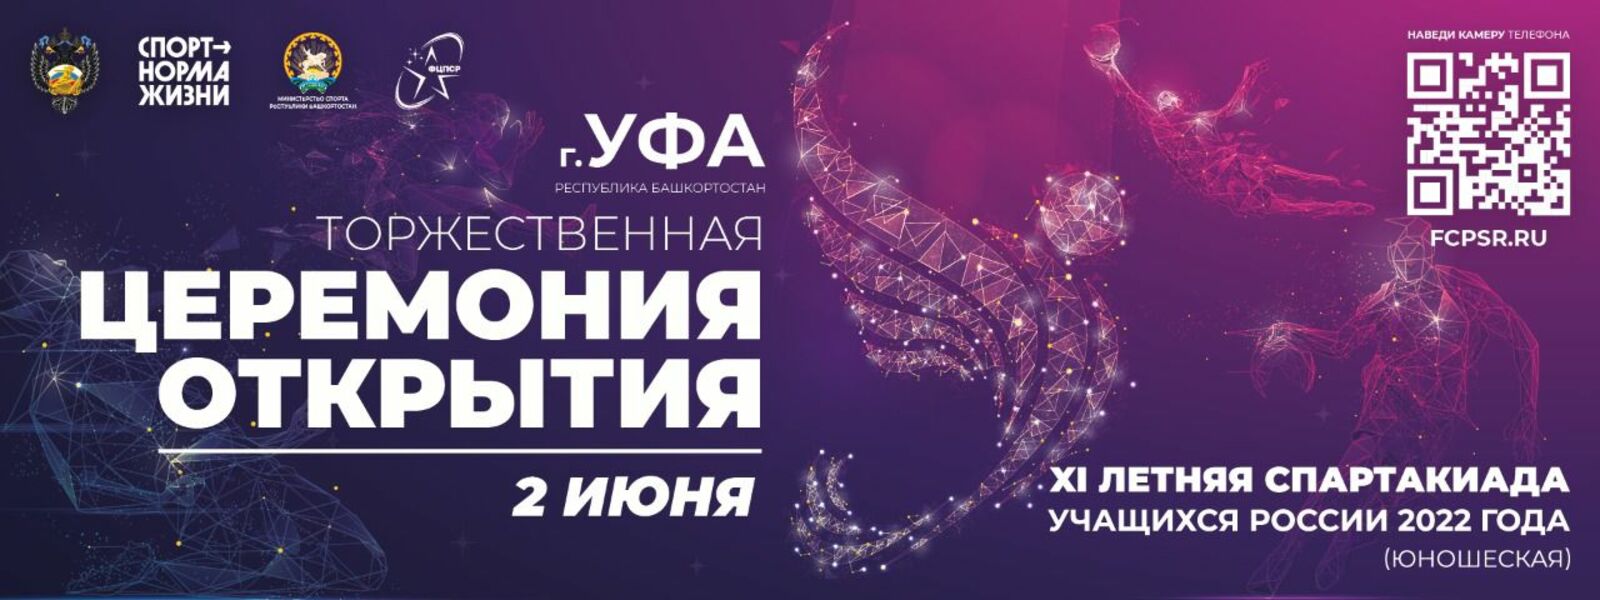 Церемония открытия XI летней Спартакиады учащихся России состоится в Уфе